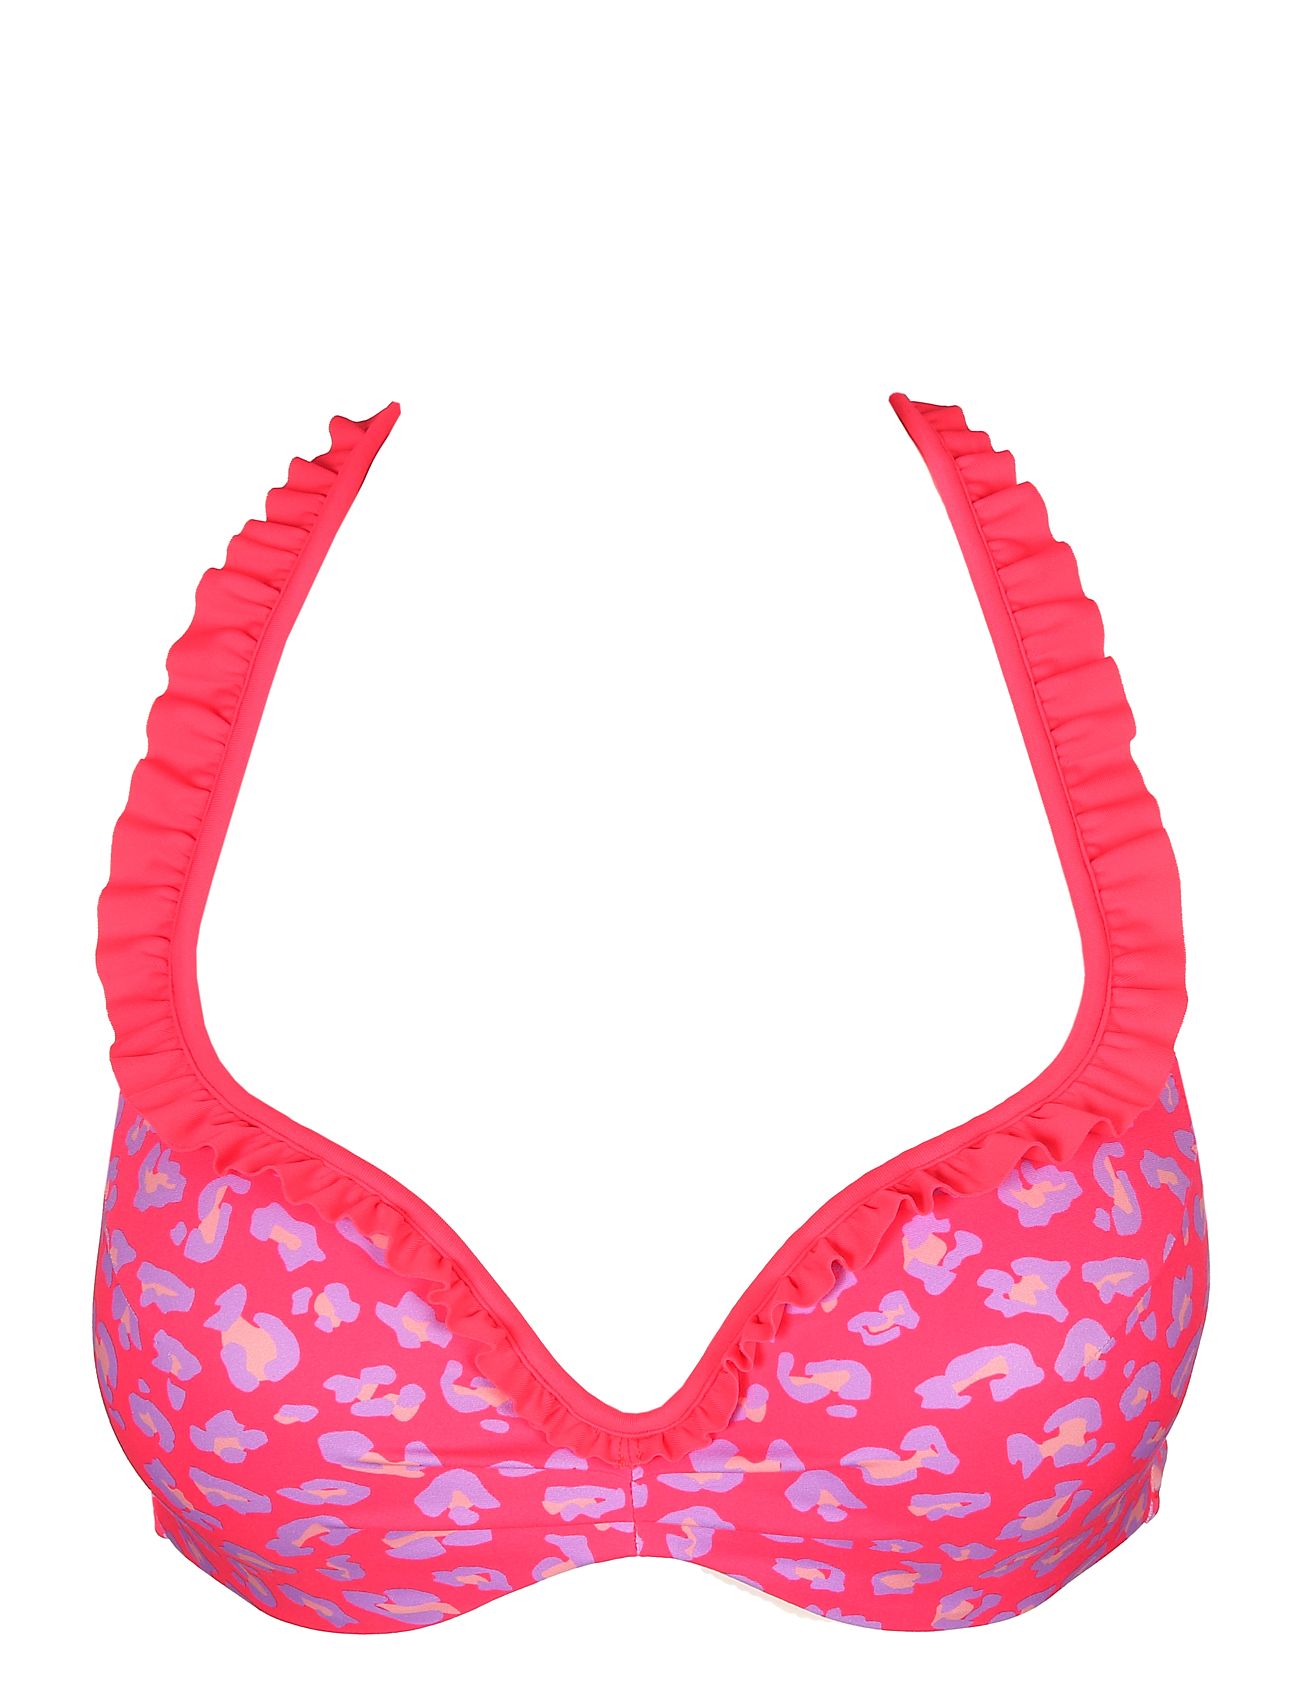 La Gomera Heartshape Bikini Top Swimwear Bikinis Bikini Tops Push-up Bikinitops Pink Marie Jo